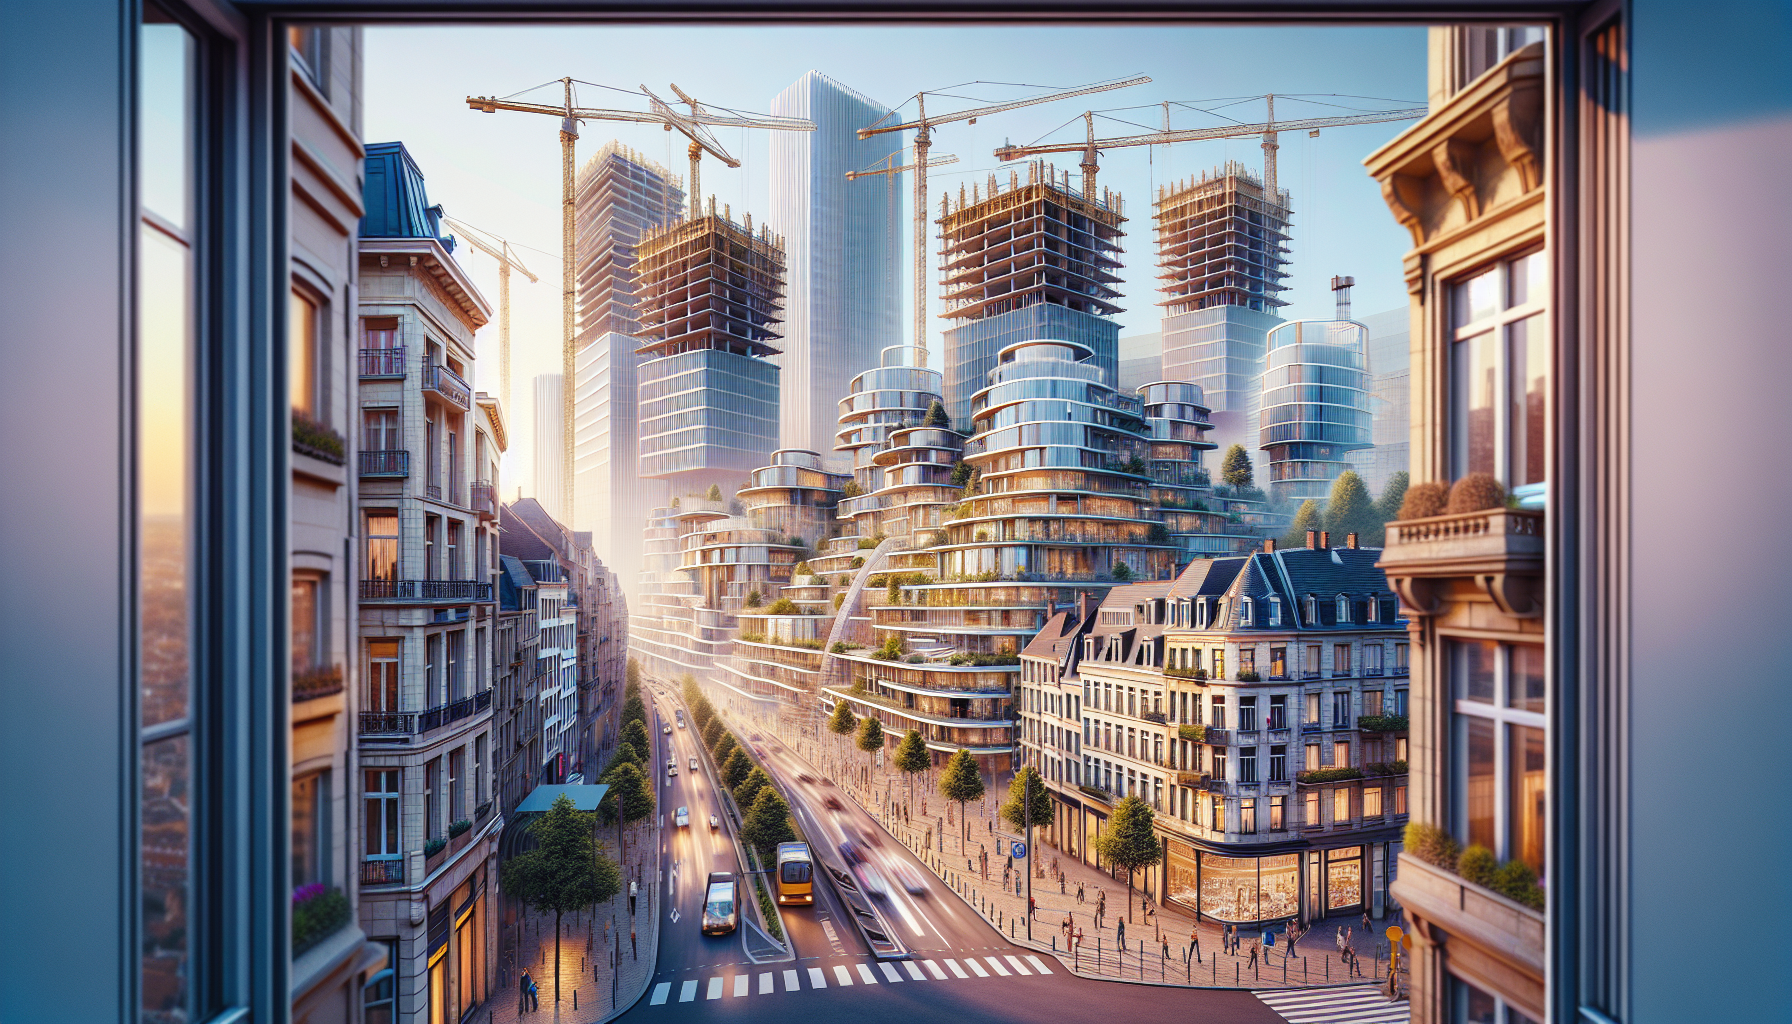 découvrez les nouveaux projets immobiliers qui réinventent le visage de bruxelles et contribuent à sa transformation urbaine. trouvez les tendances et les initiatives qui façonnent le paysage immobilier de la capitale belge.